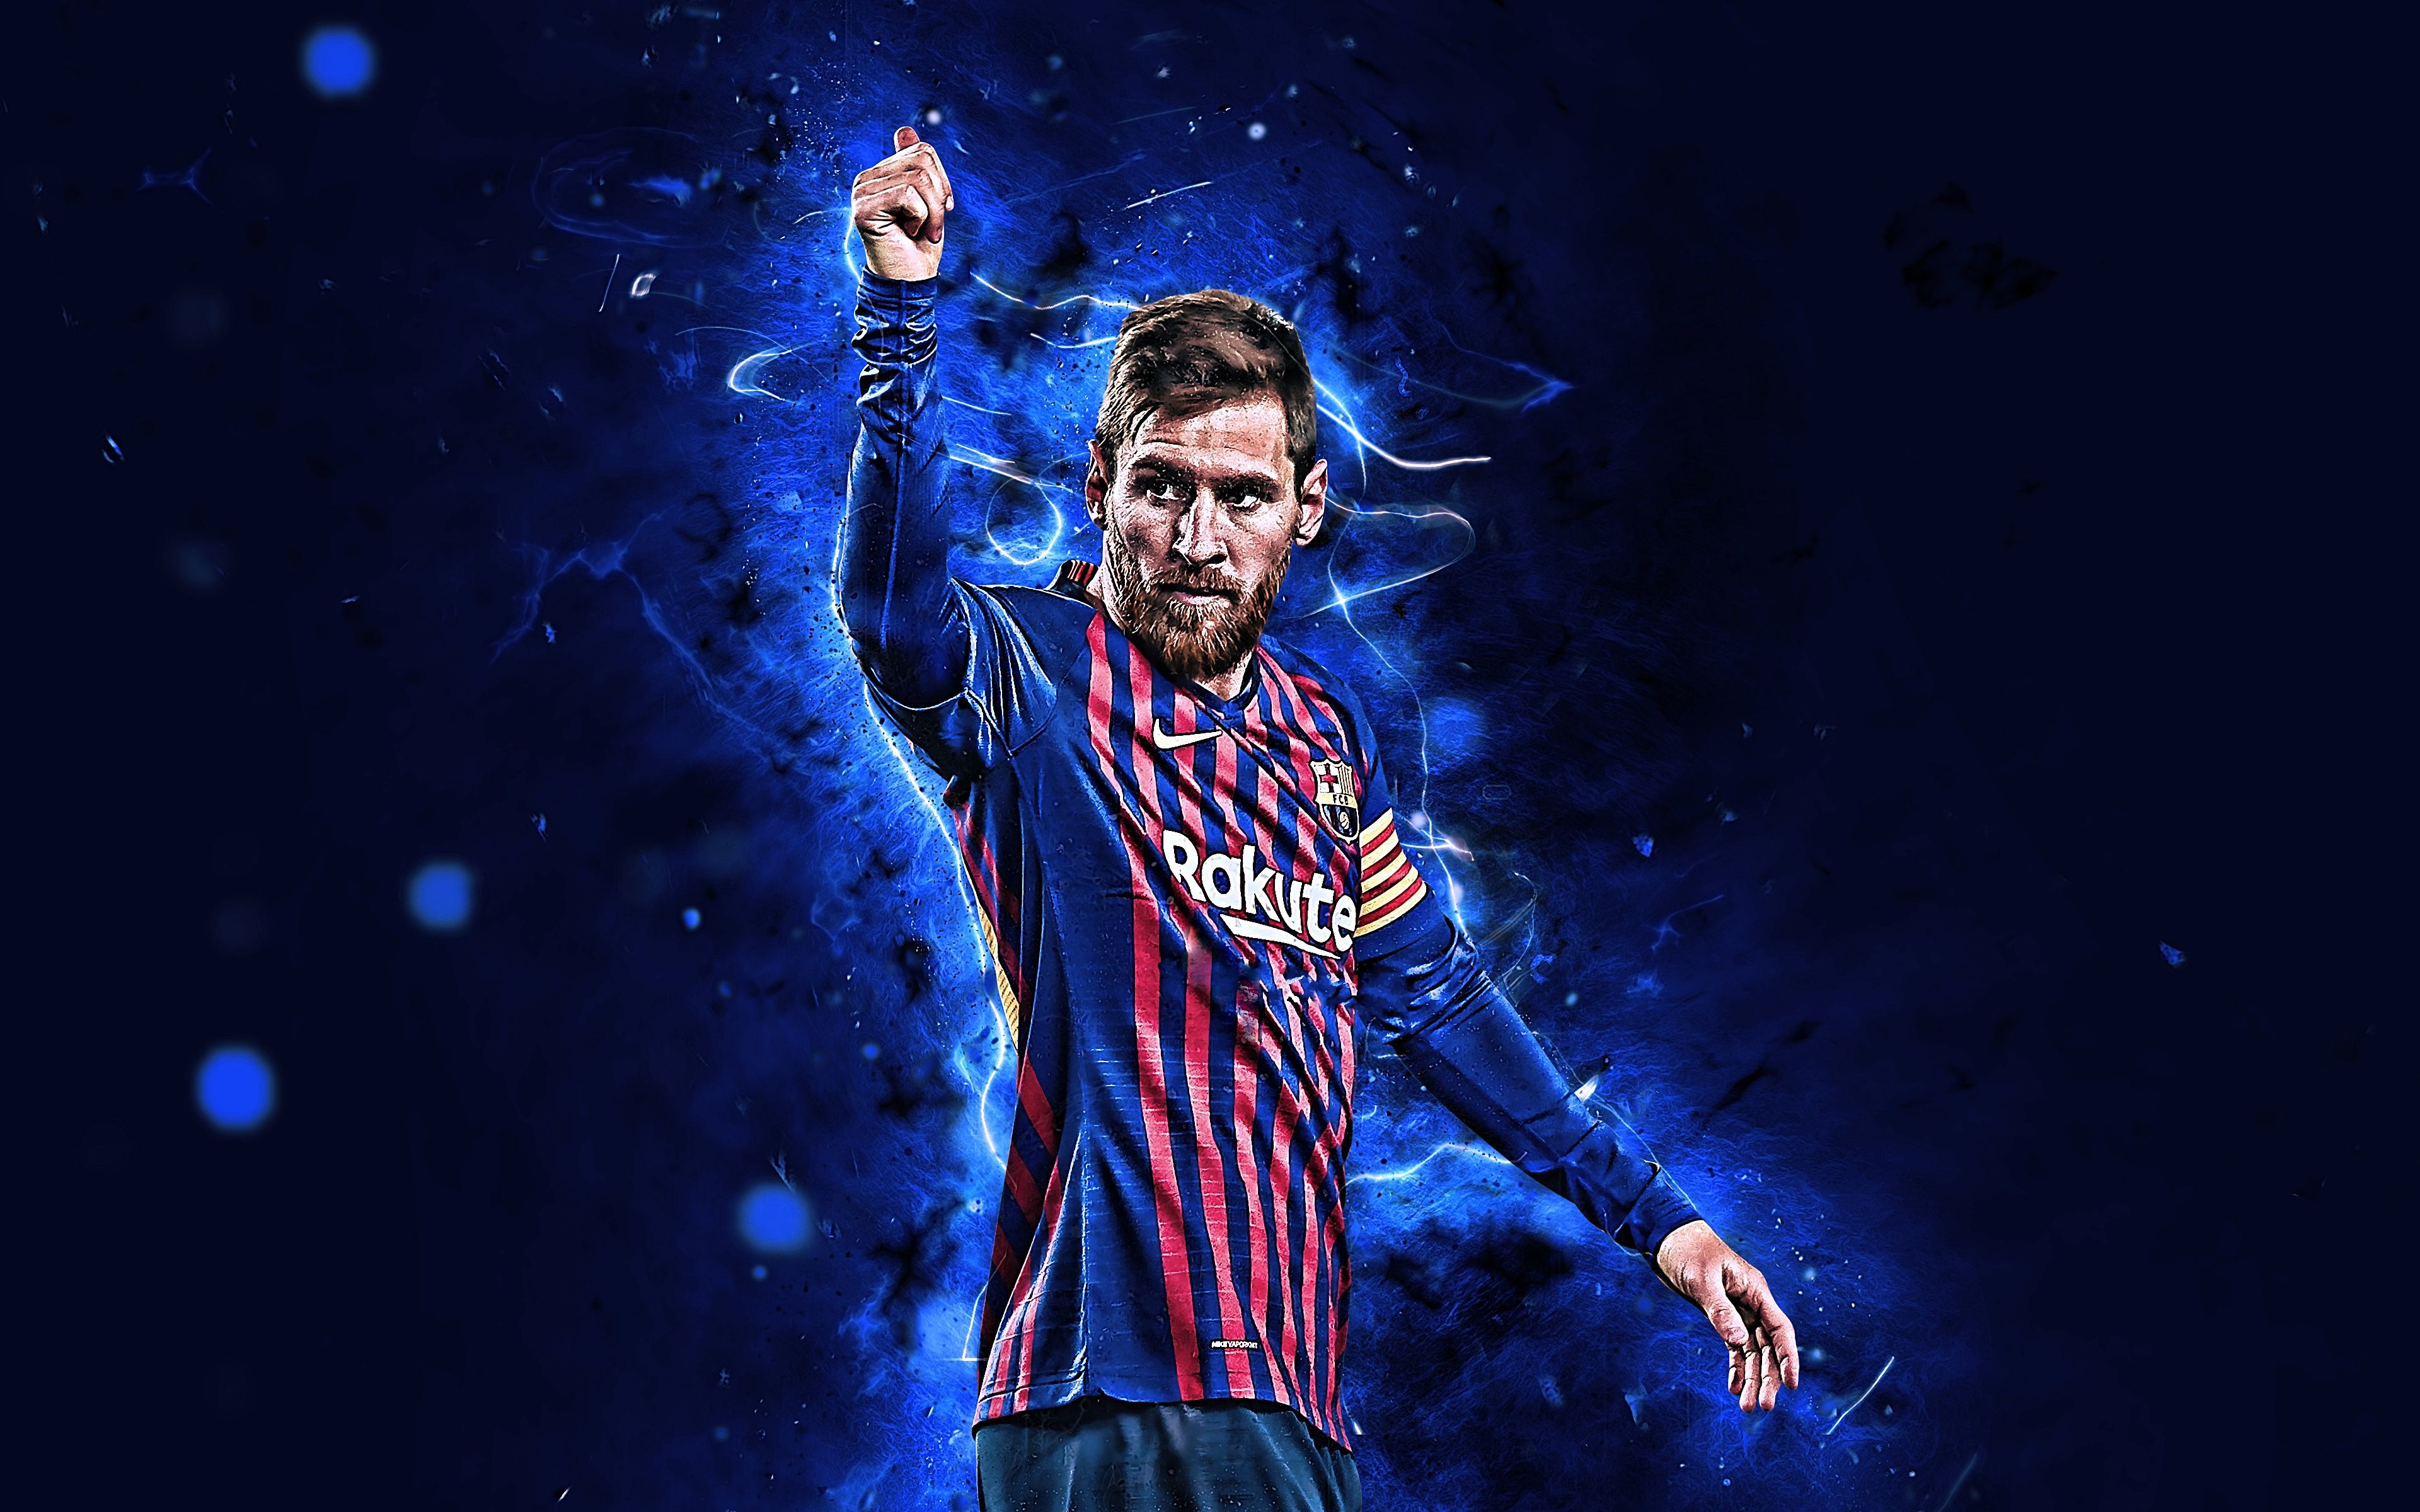 Mời bạn đến và chiêm ngưỡng bức hình nền máy tính 4K của ngôi sao bóng đá Messi. Cùng với độ phân giải siêu nét, tông màu sắc tươi sáng và sự pha trộn khéo léo giữa ánh sáng và bóng tối, bức hình này sẽ thực sự tạo nên một trải nghiệm thú vị cho màn hình máy tính của bạn.